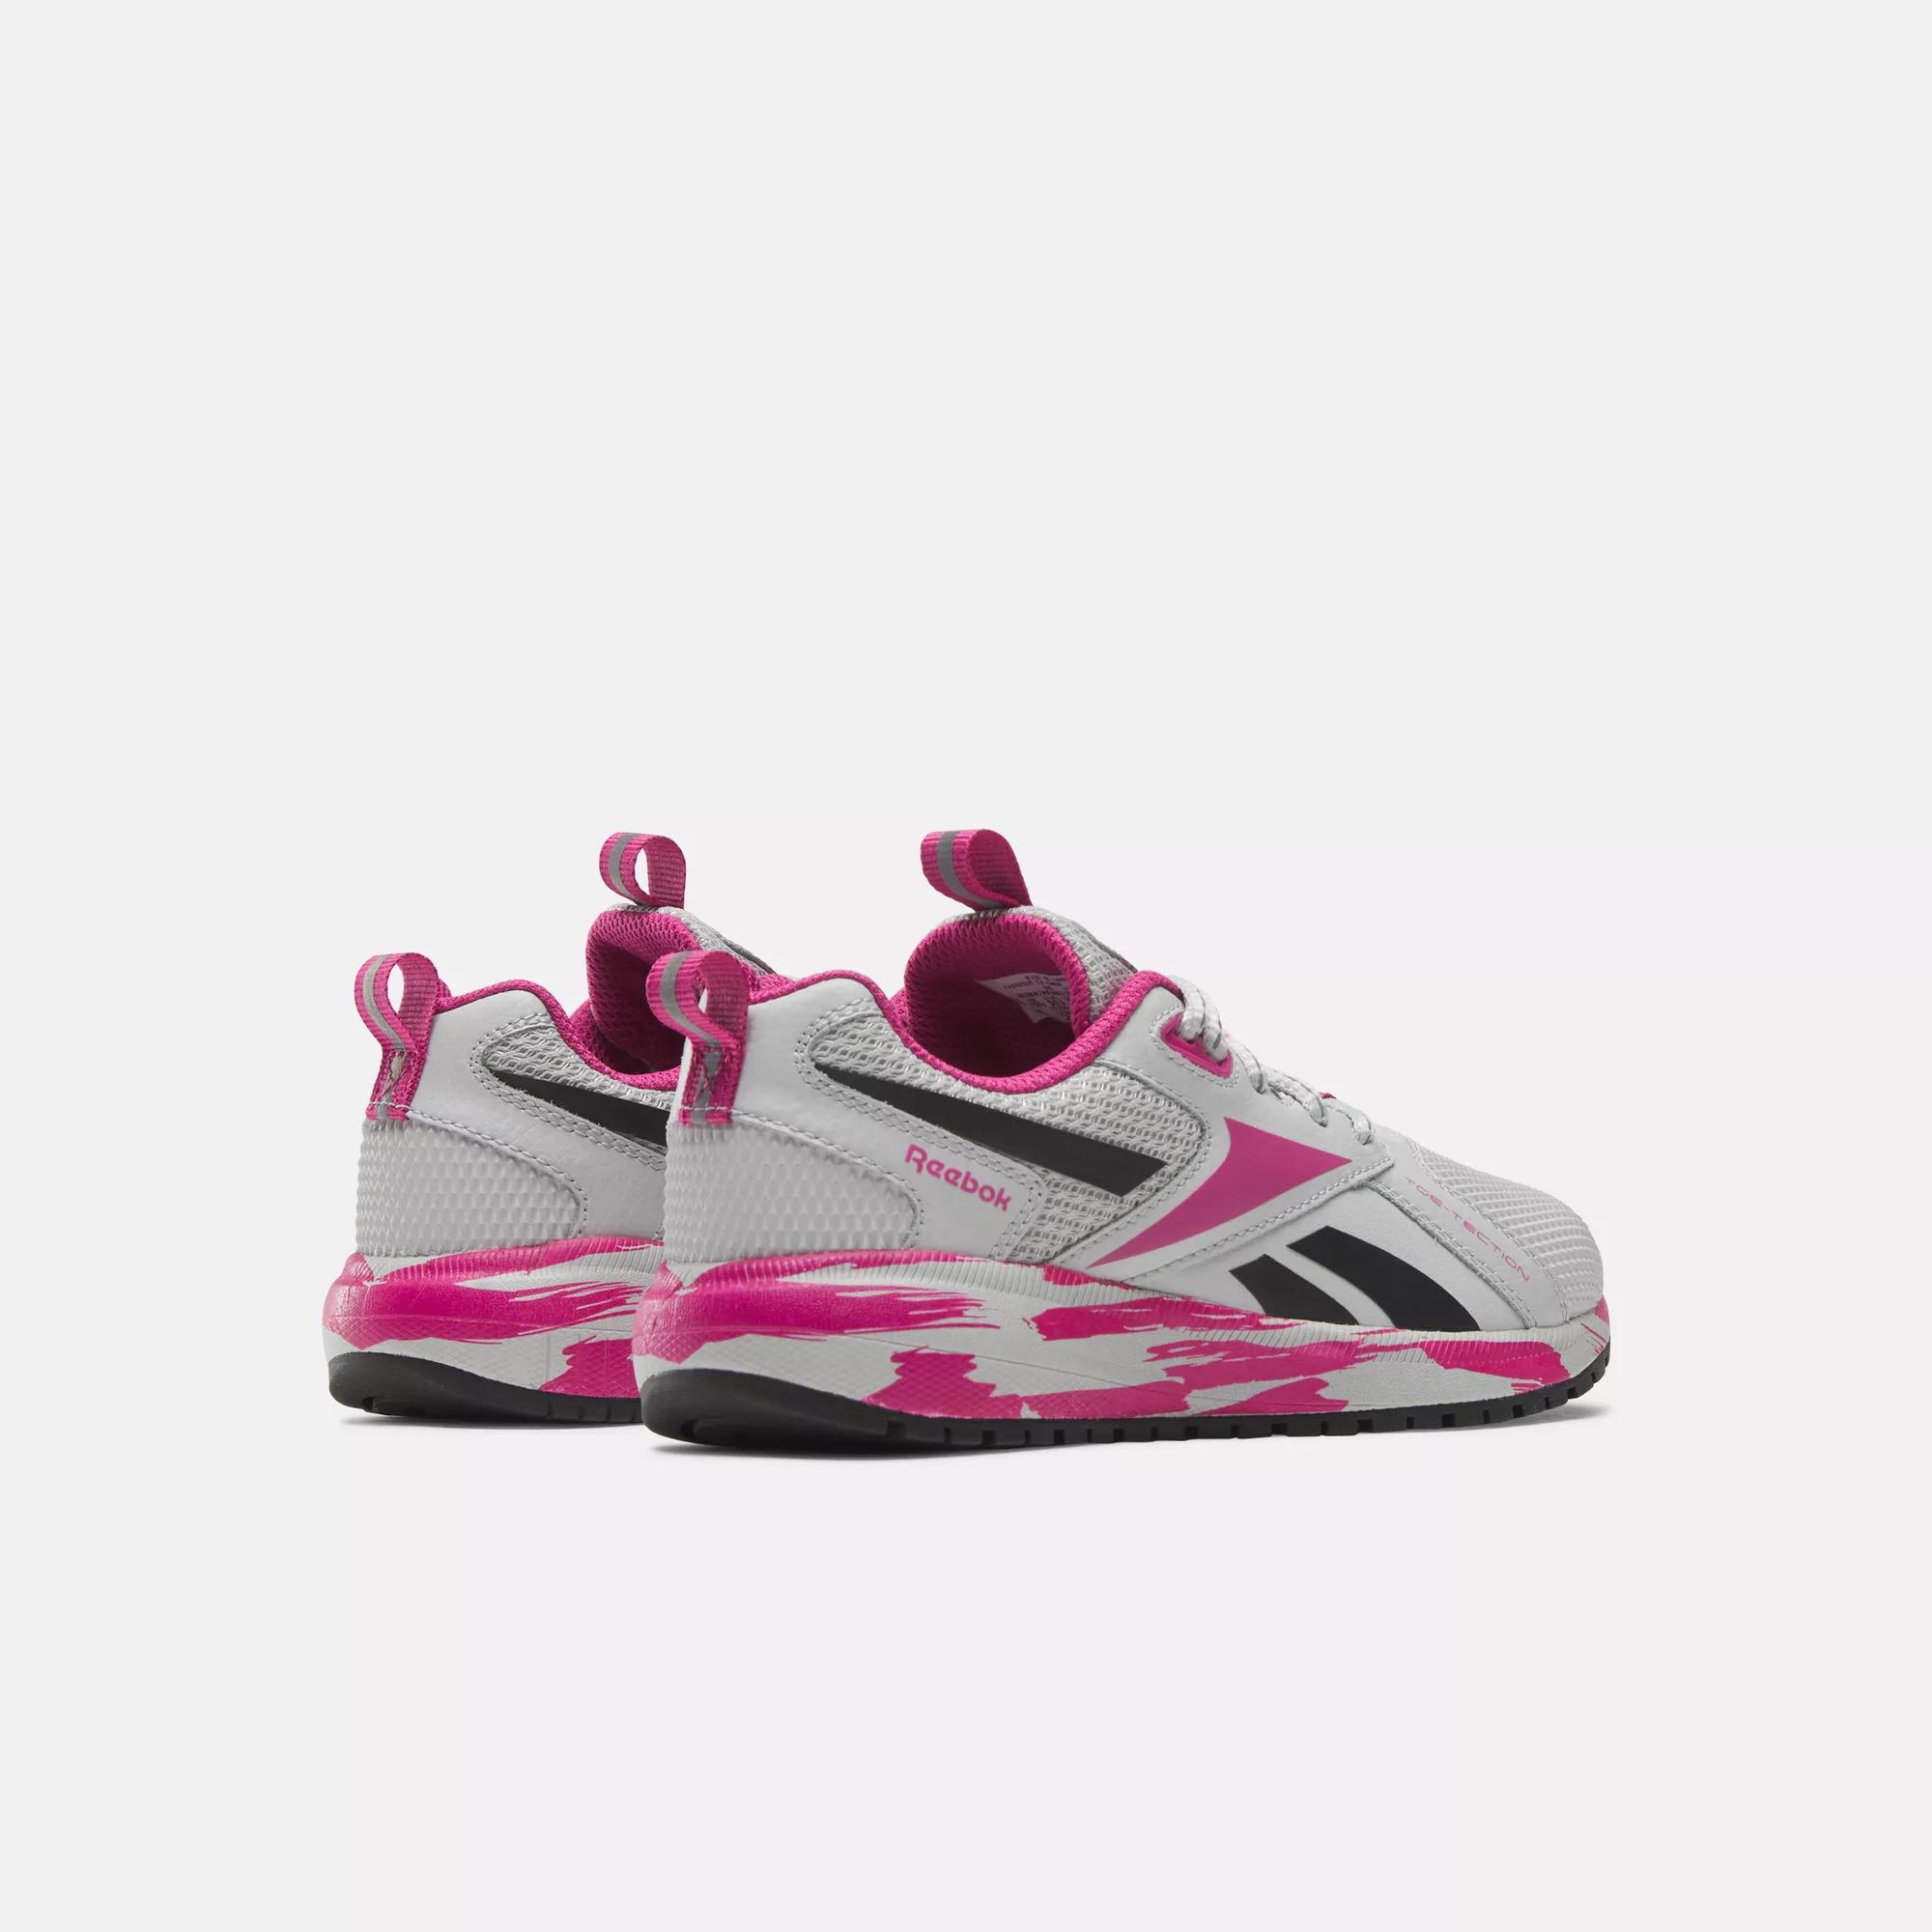 Reebok Preschool - Shoes XT - Pink / Core | Steely / Black Reebok Durable Proud Fog Semi